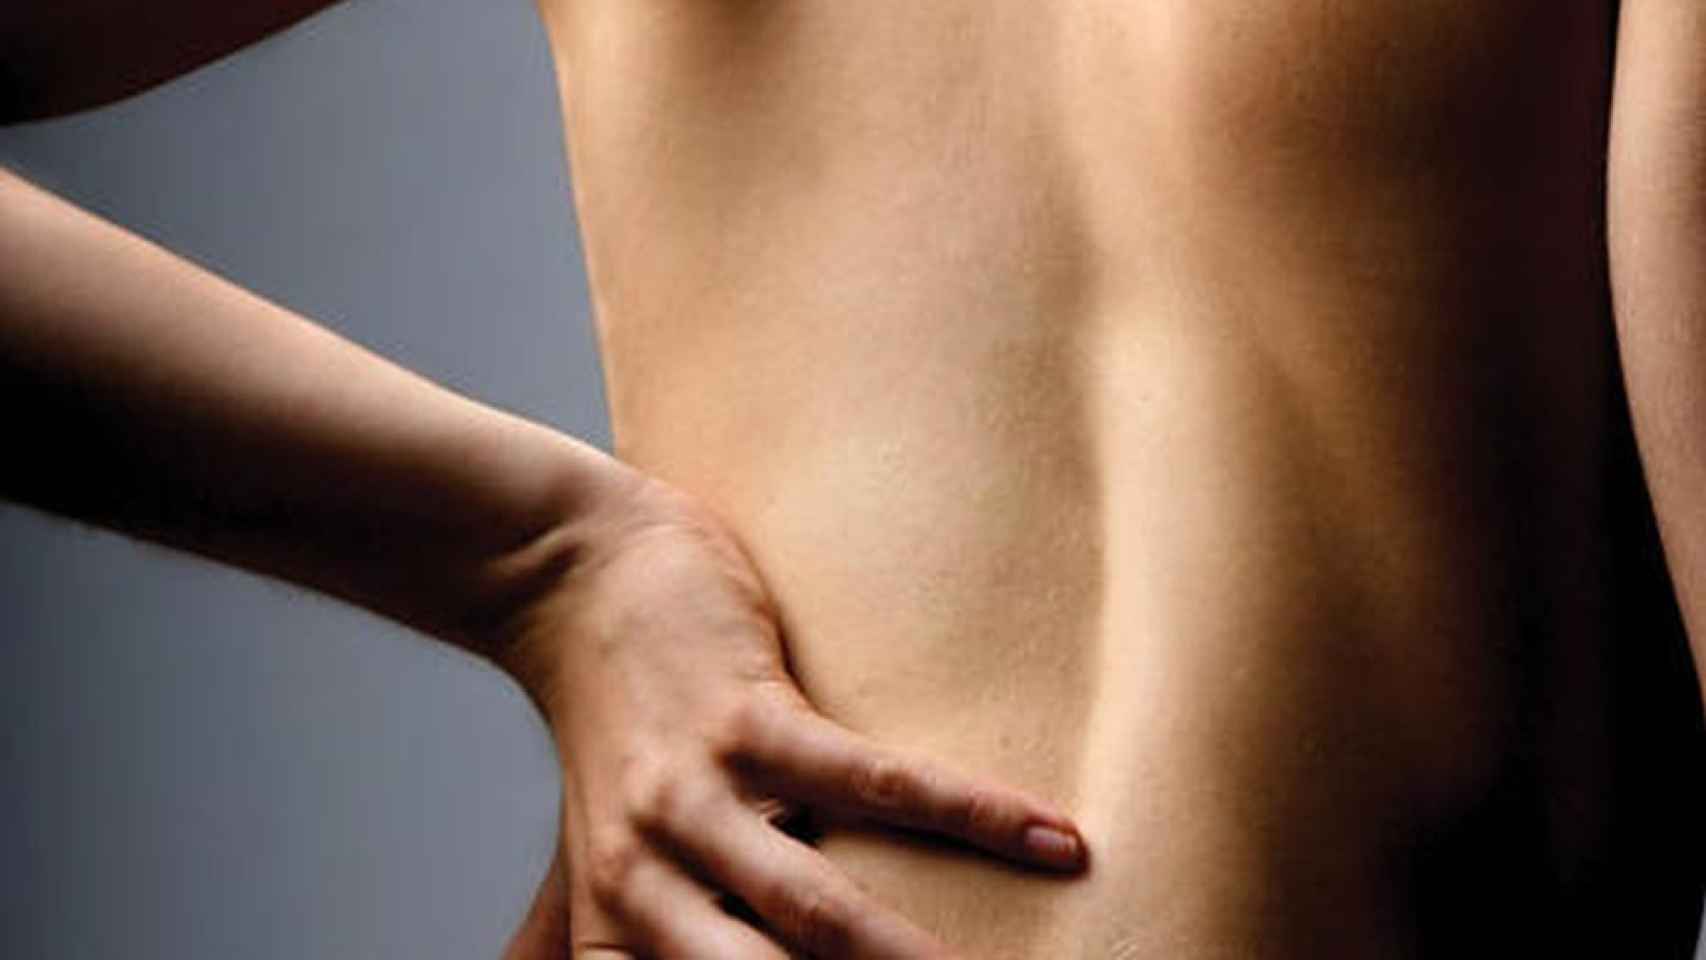 Una imagen ilustrativa de una persona con dolor de espalda / EFE Suplementos de colágeno reducir riesgo de lesiones